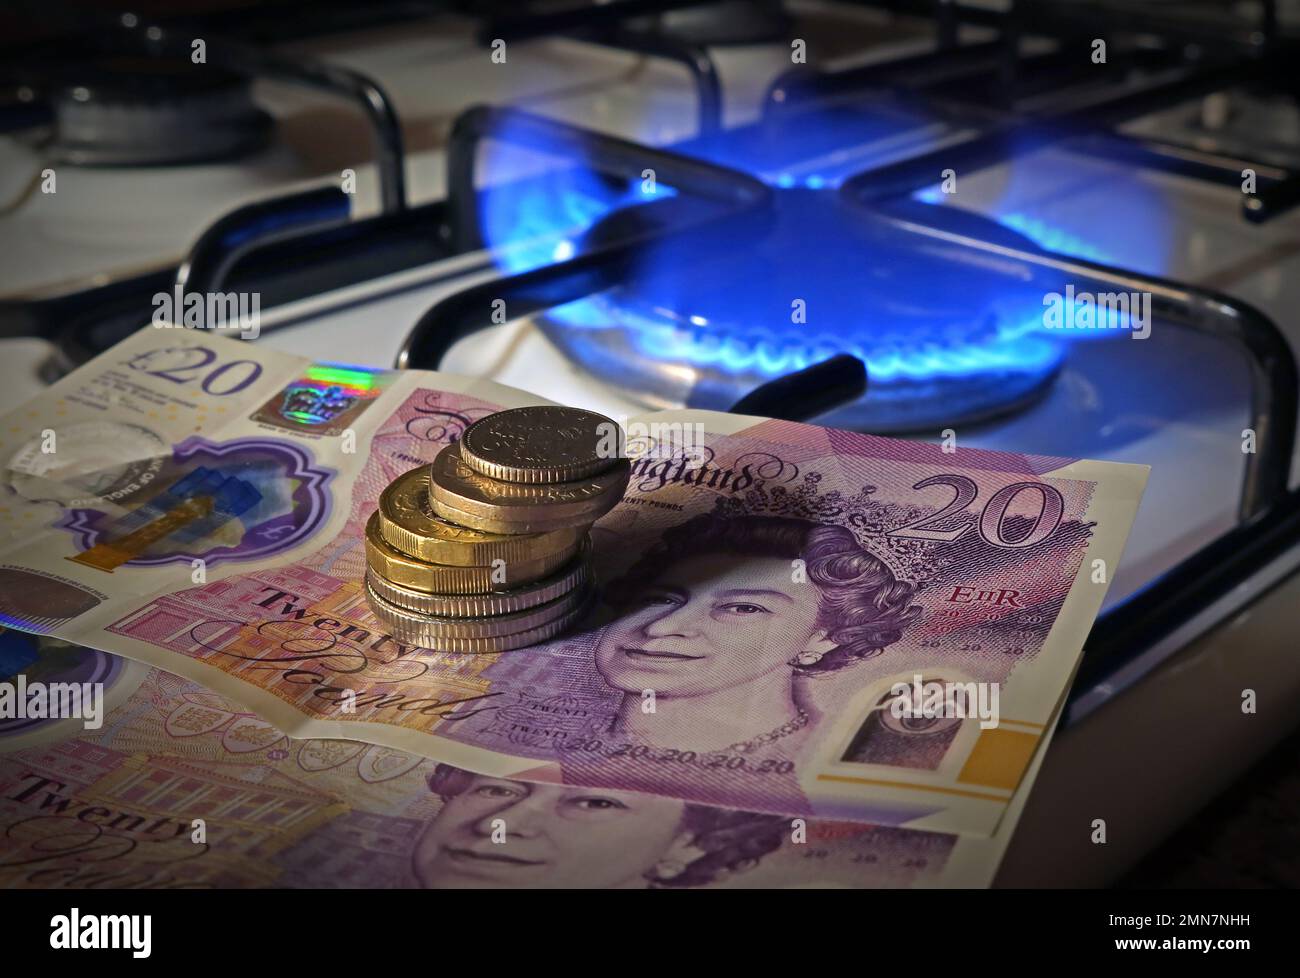 Possiamo permetterci di cucinare con il costo del gas nel 2023? Monete/banconote in sterline inglesi accanto a una fiamma a gas su un piano cottura da cucina Foto Stock